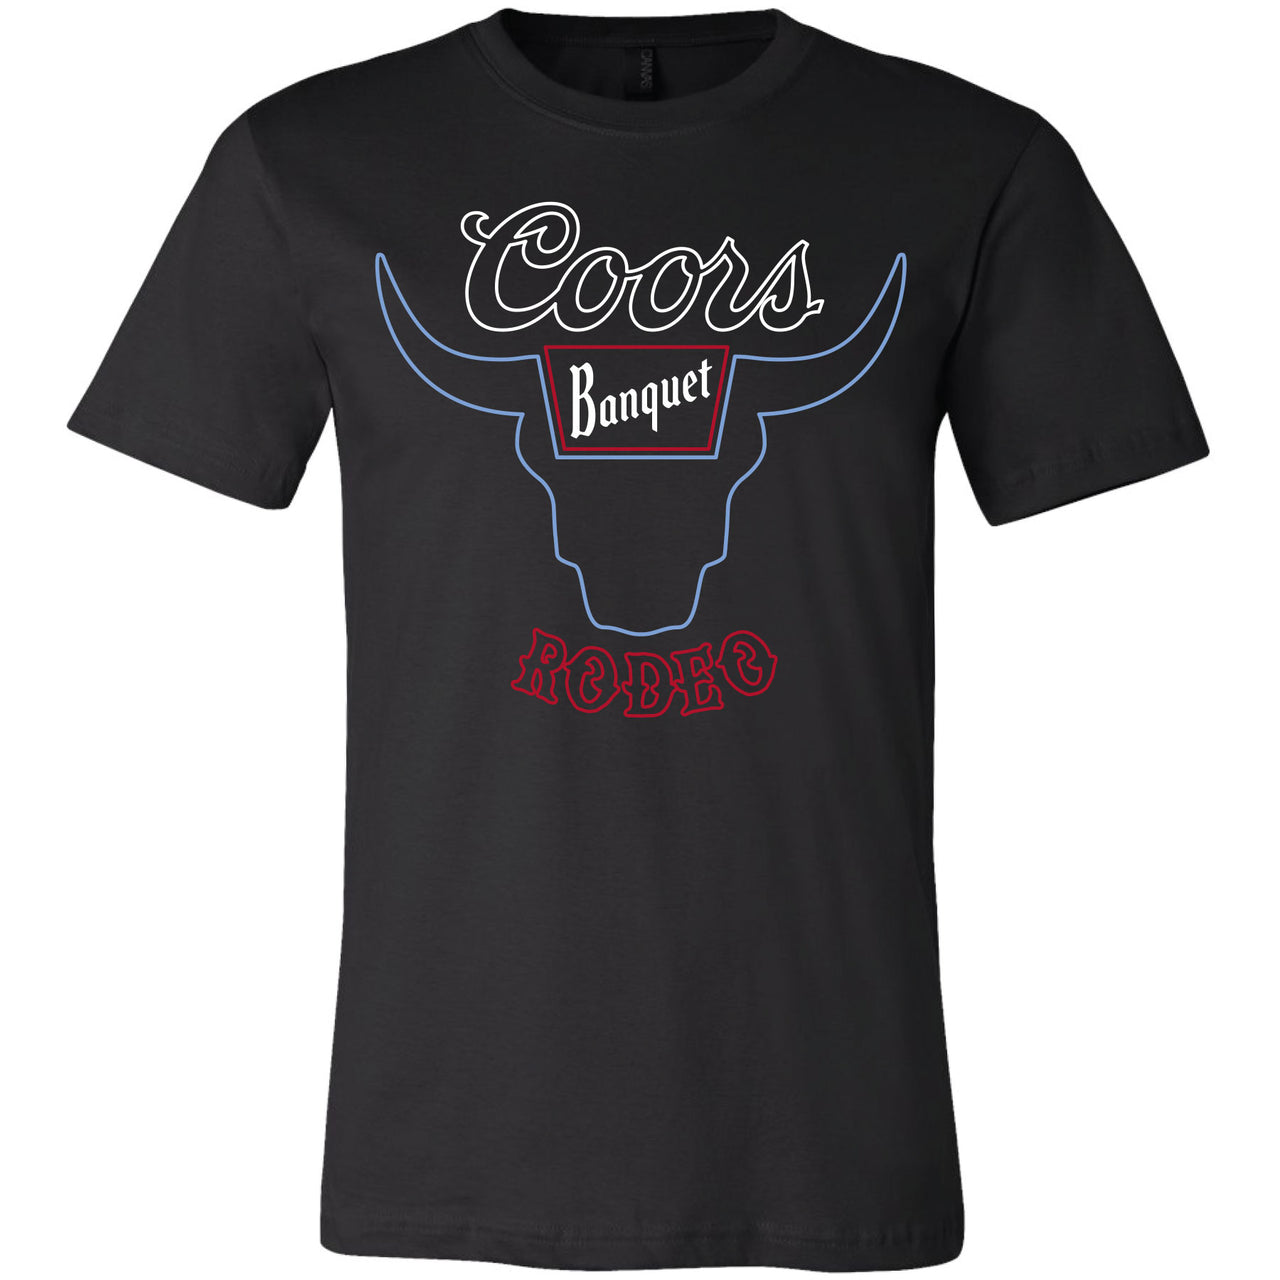 Coors Banquet Rodeo Neon T-shirt